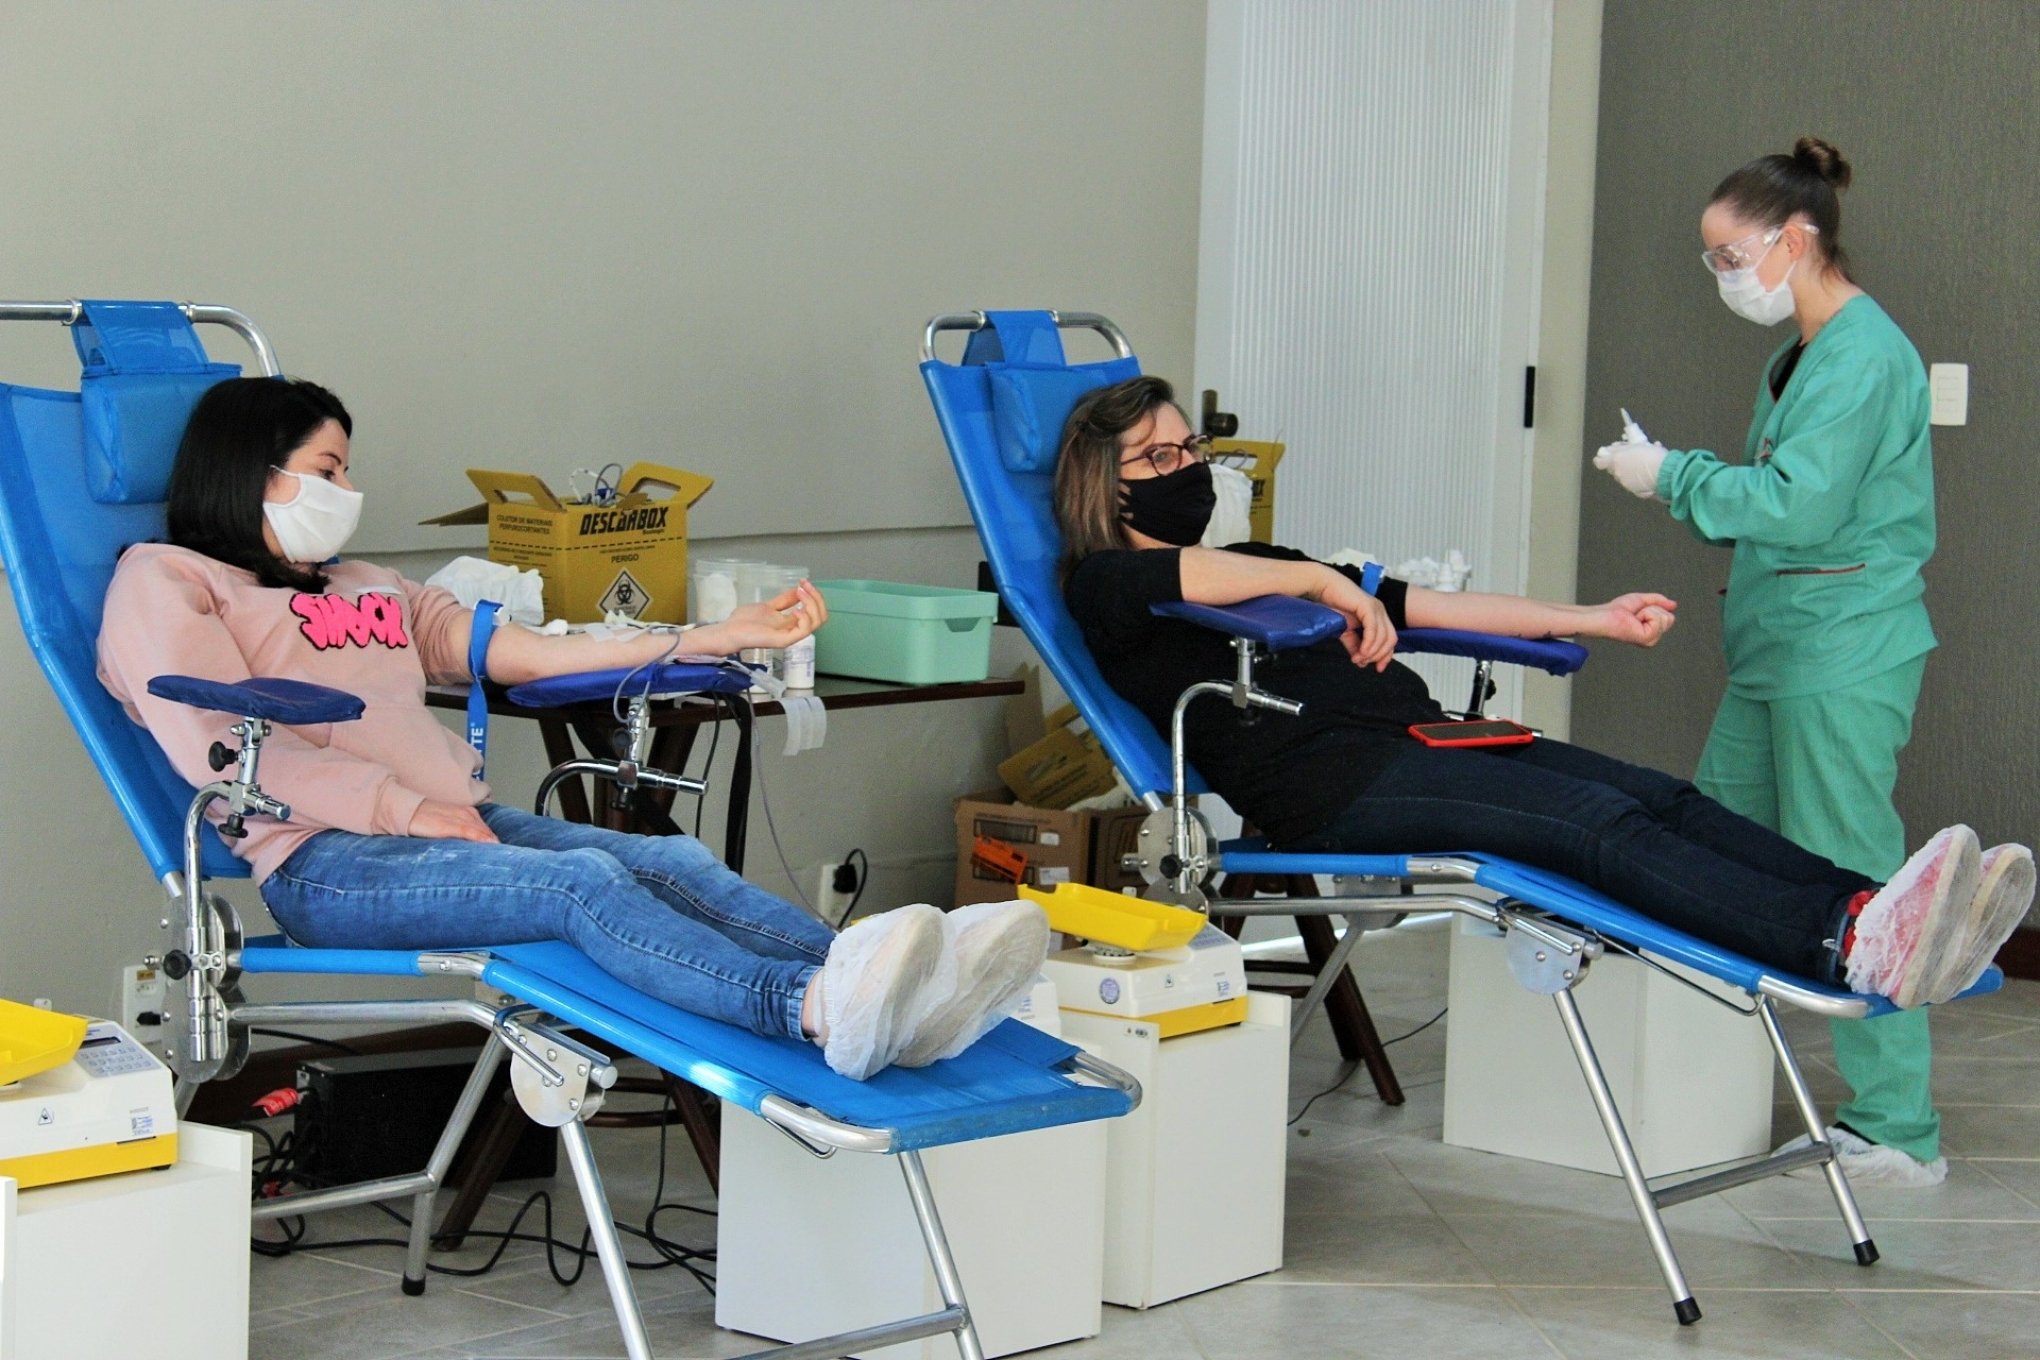 Gramadenses poderão doar sangue na cidade no dia 15 de março